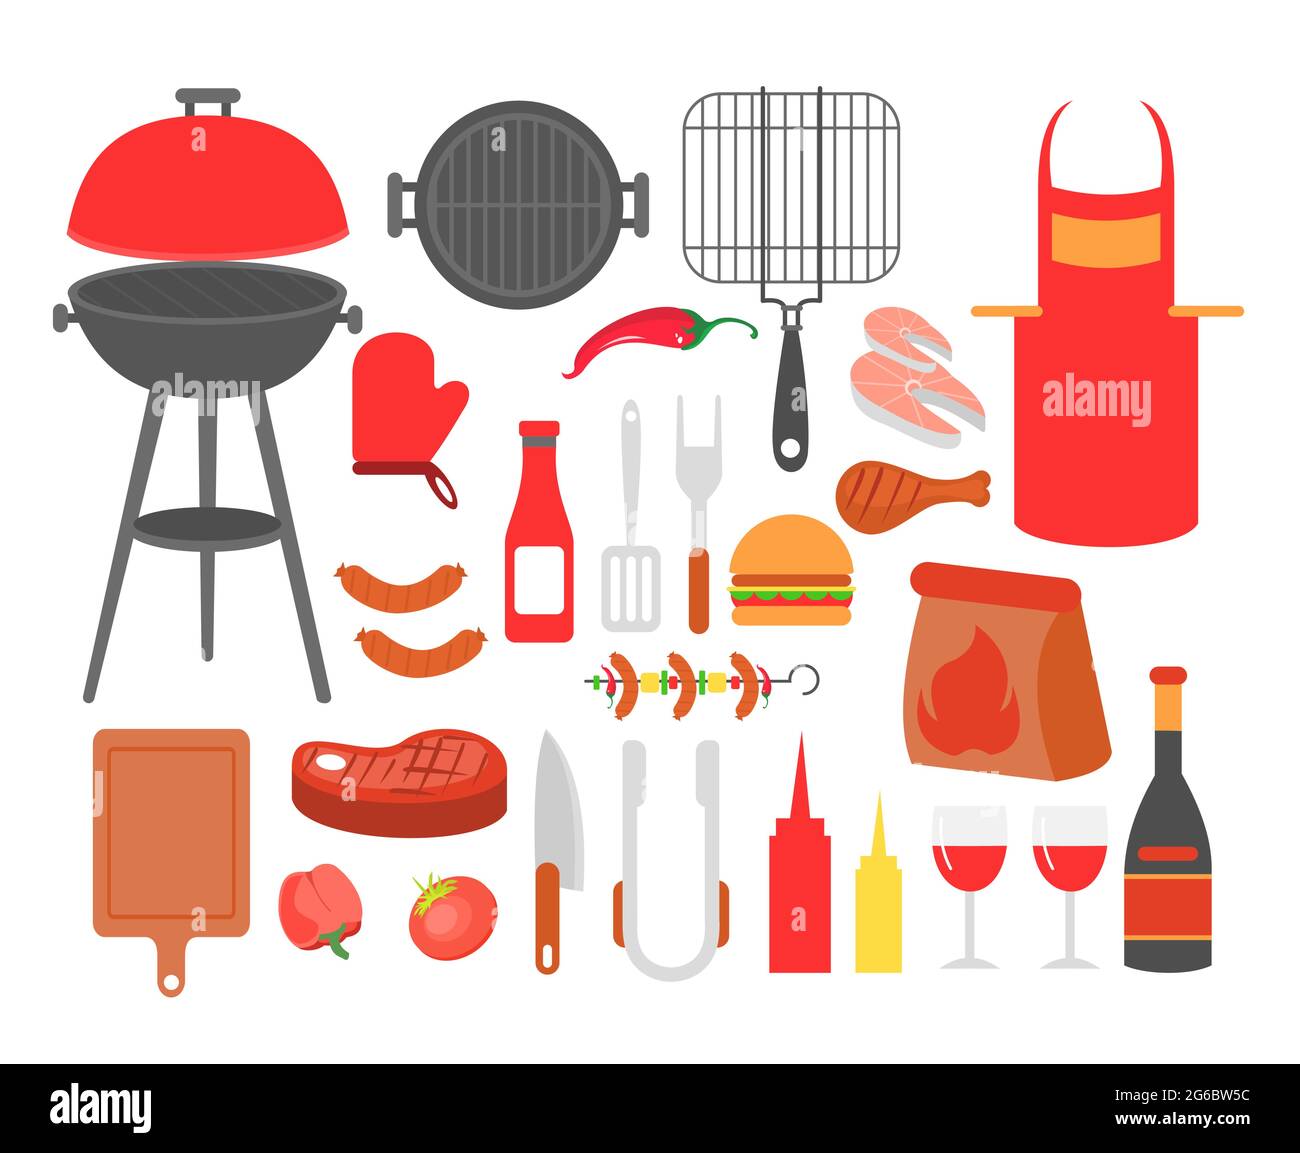 Ensemble d'illustrations vectorielles de barbecue, steak grillé, saucisse, poulet, fruits de mer et légumes, Tous les outils pour faire la fête au barbecue, faire cuire les aliments à l'extérieur. Illustration de Vecteur